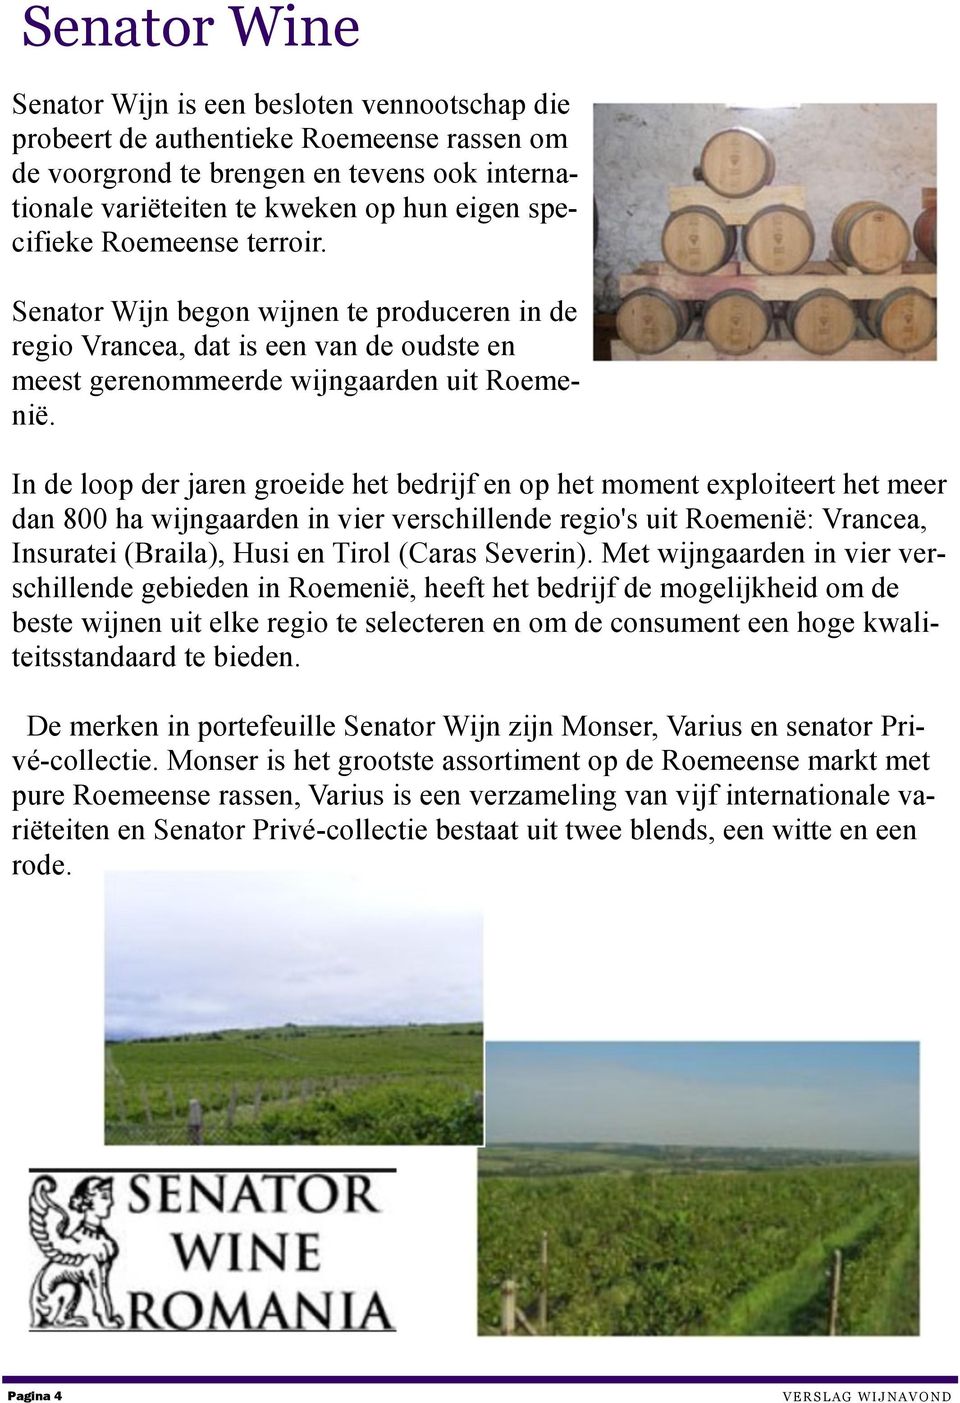 In de loop der jaren groeide het bedrijf en op het moment exploiteert het meer dan 800 ha wijngaarden in vier verschillende regio's uit Roemenië: Vrancea, Insuratei (Braila), Husi en Tirol (Caras